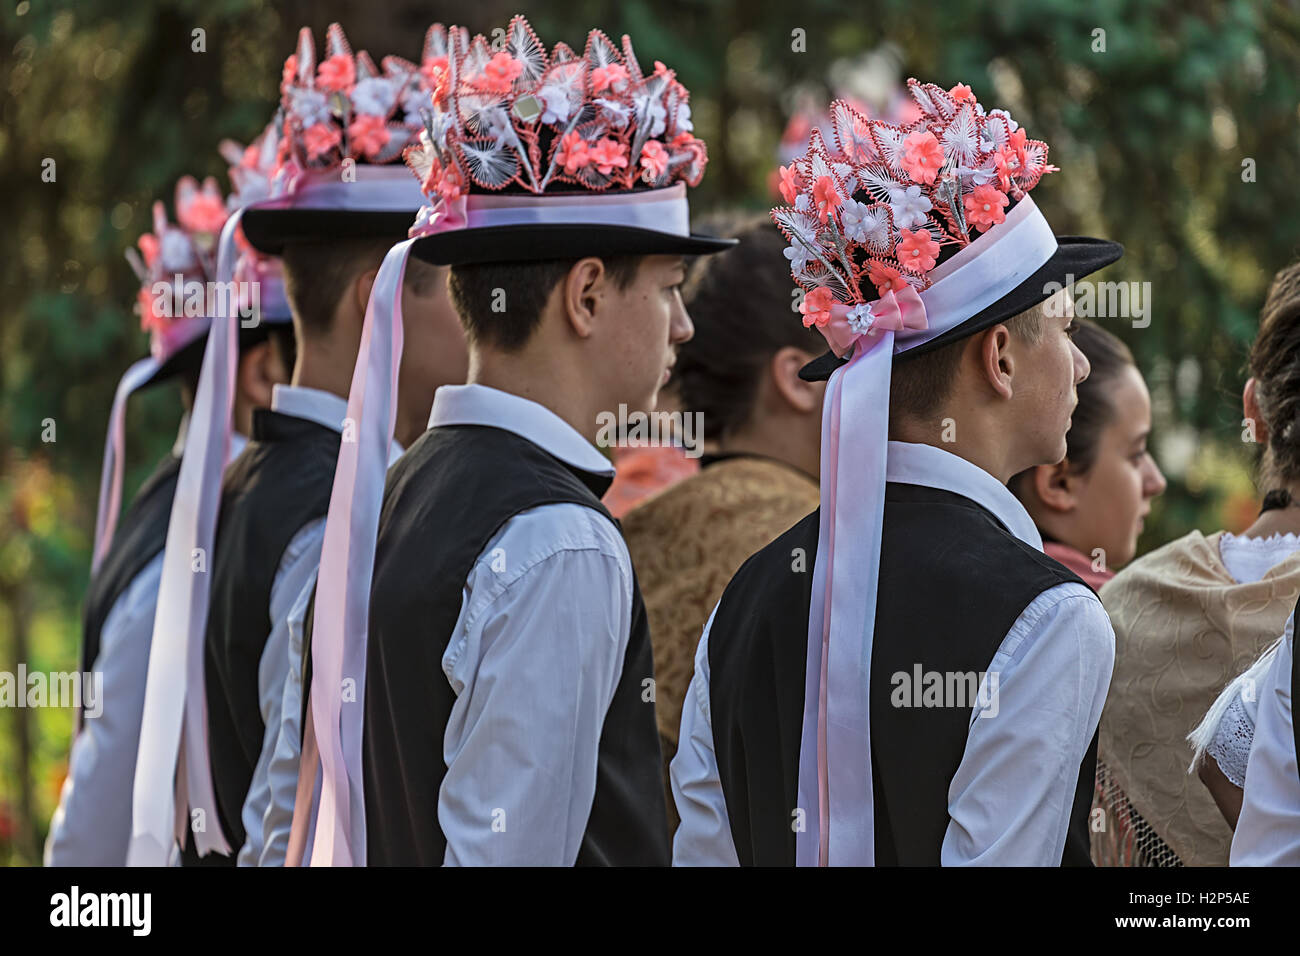 Roumanie TIMISOARA,-septembre 24,2016:groupe de jeunes danseurs allemands de Banat, Roumanie vêtus de costumes folkloriques, présent à tradi Banque D'Images